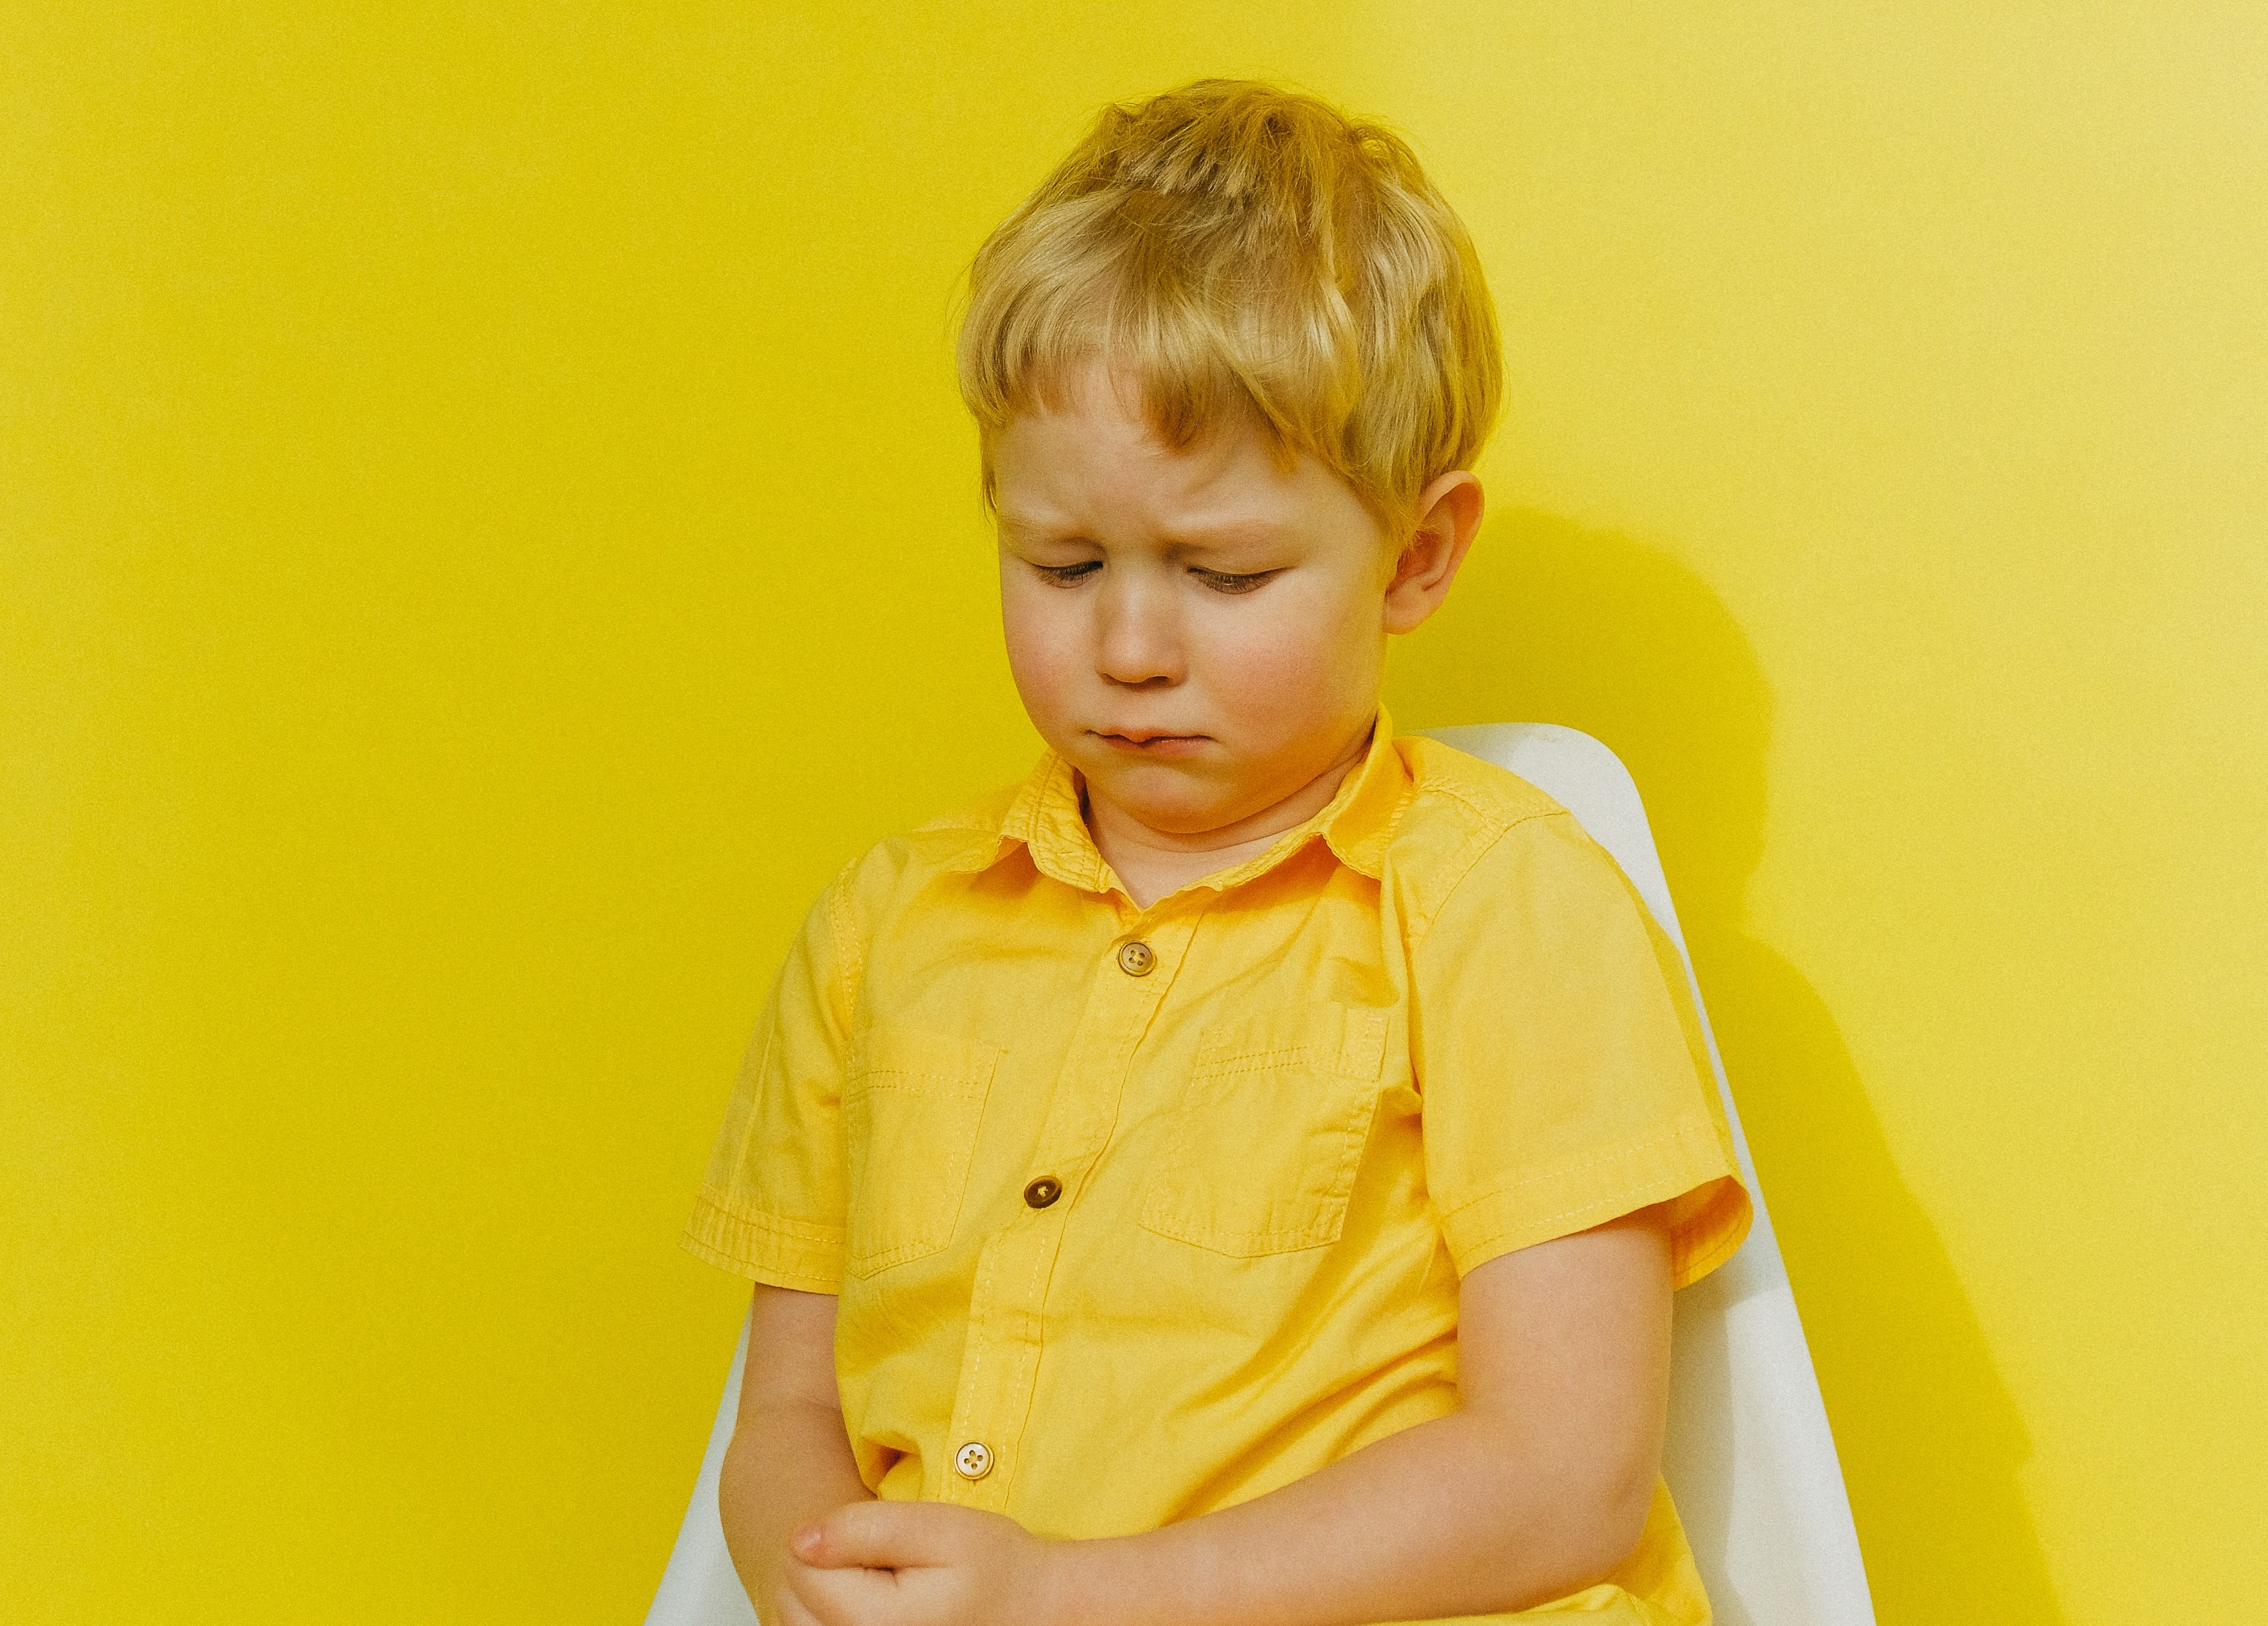 Blond jongetje in geel shirt tegen gele achtergrond kijkt verdrietig